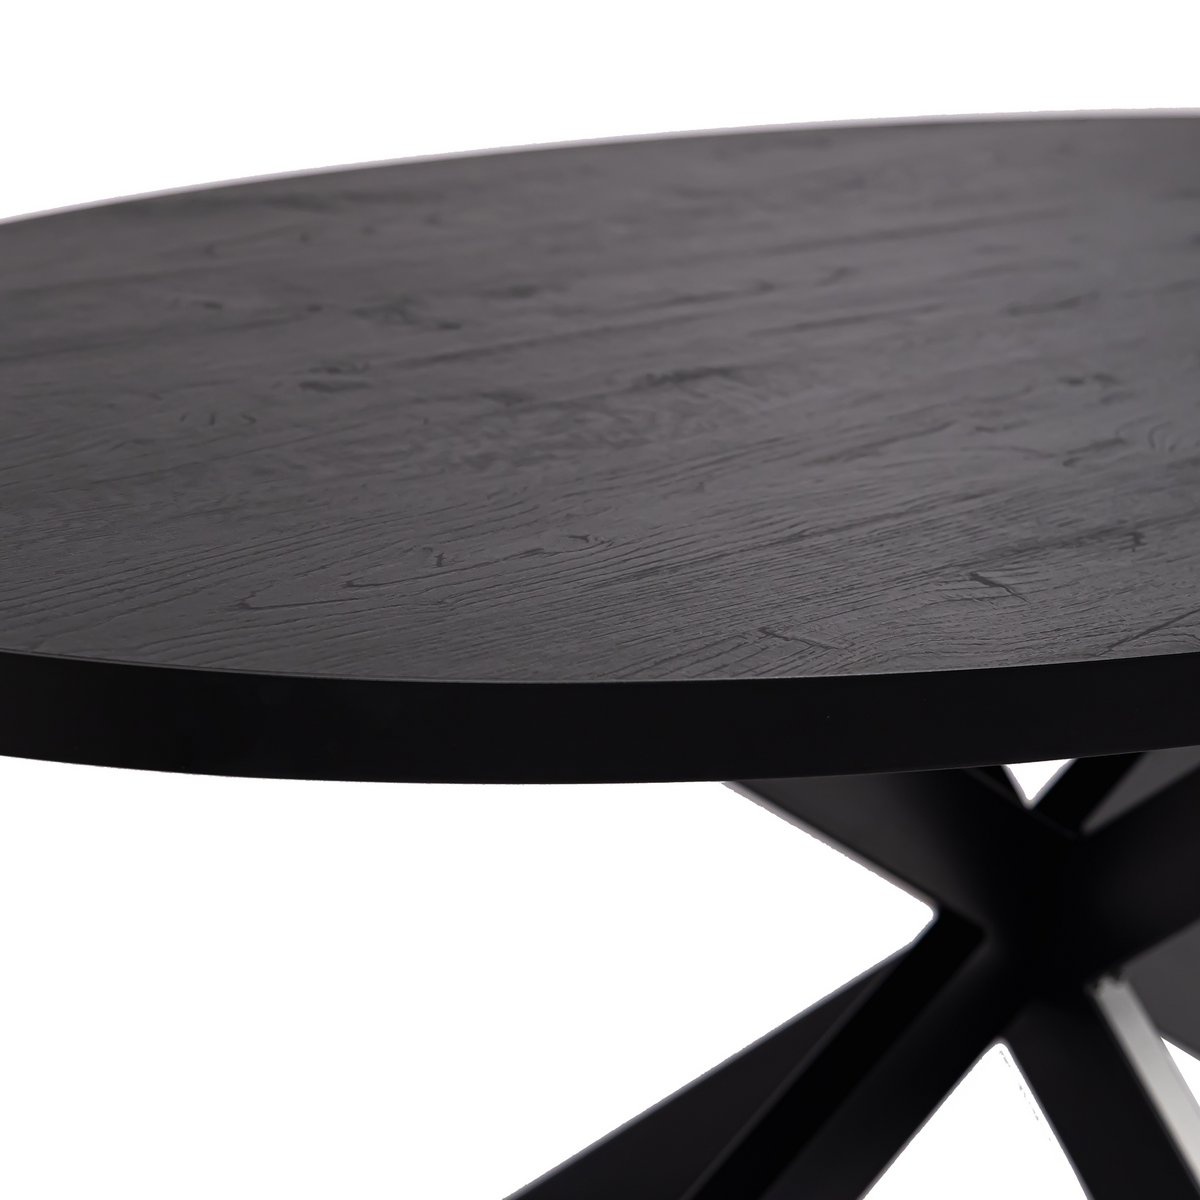 KantoormeubelenPlus Stalux Ovale eettafel 'Mees' 240 x 110cm, kleur zwart / zwart eiken